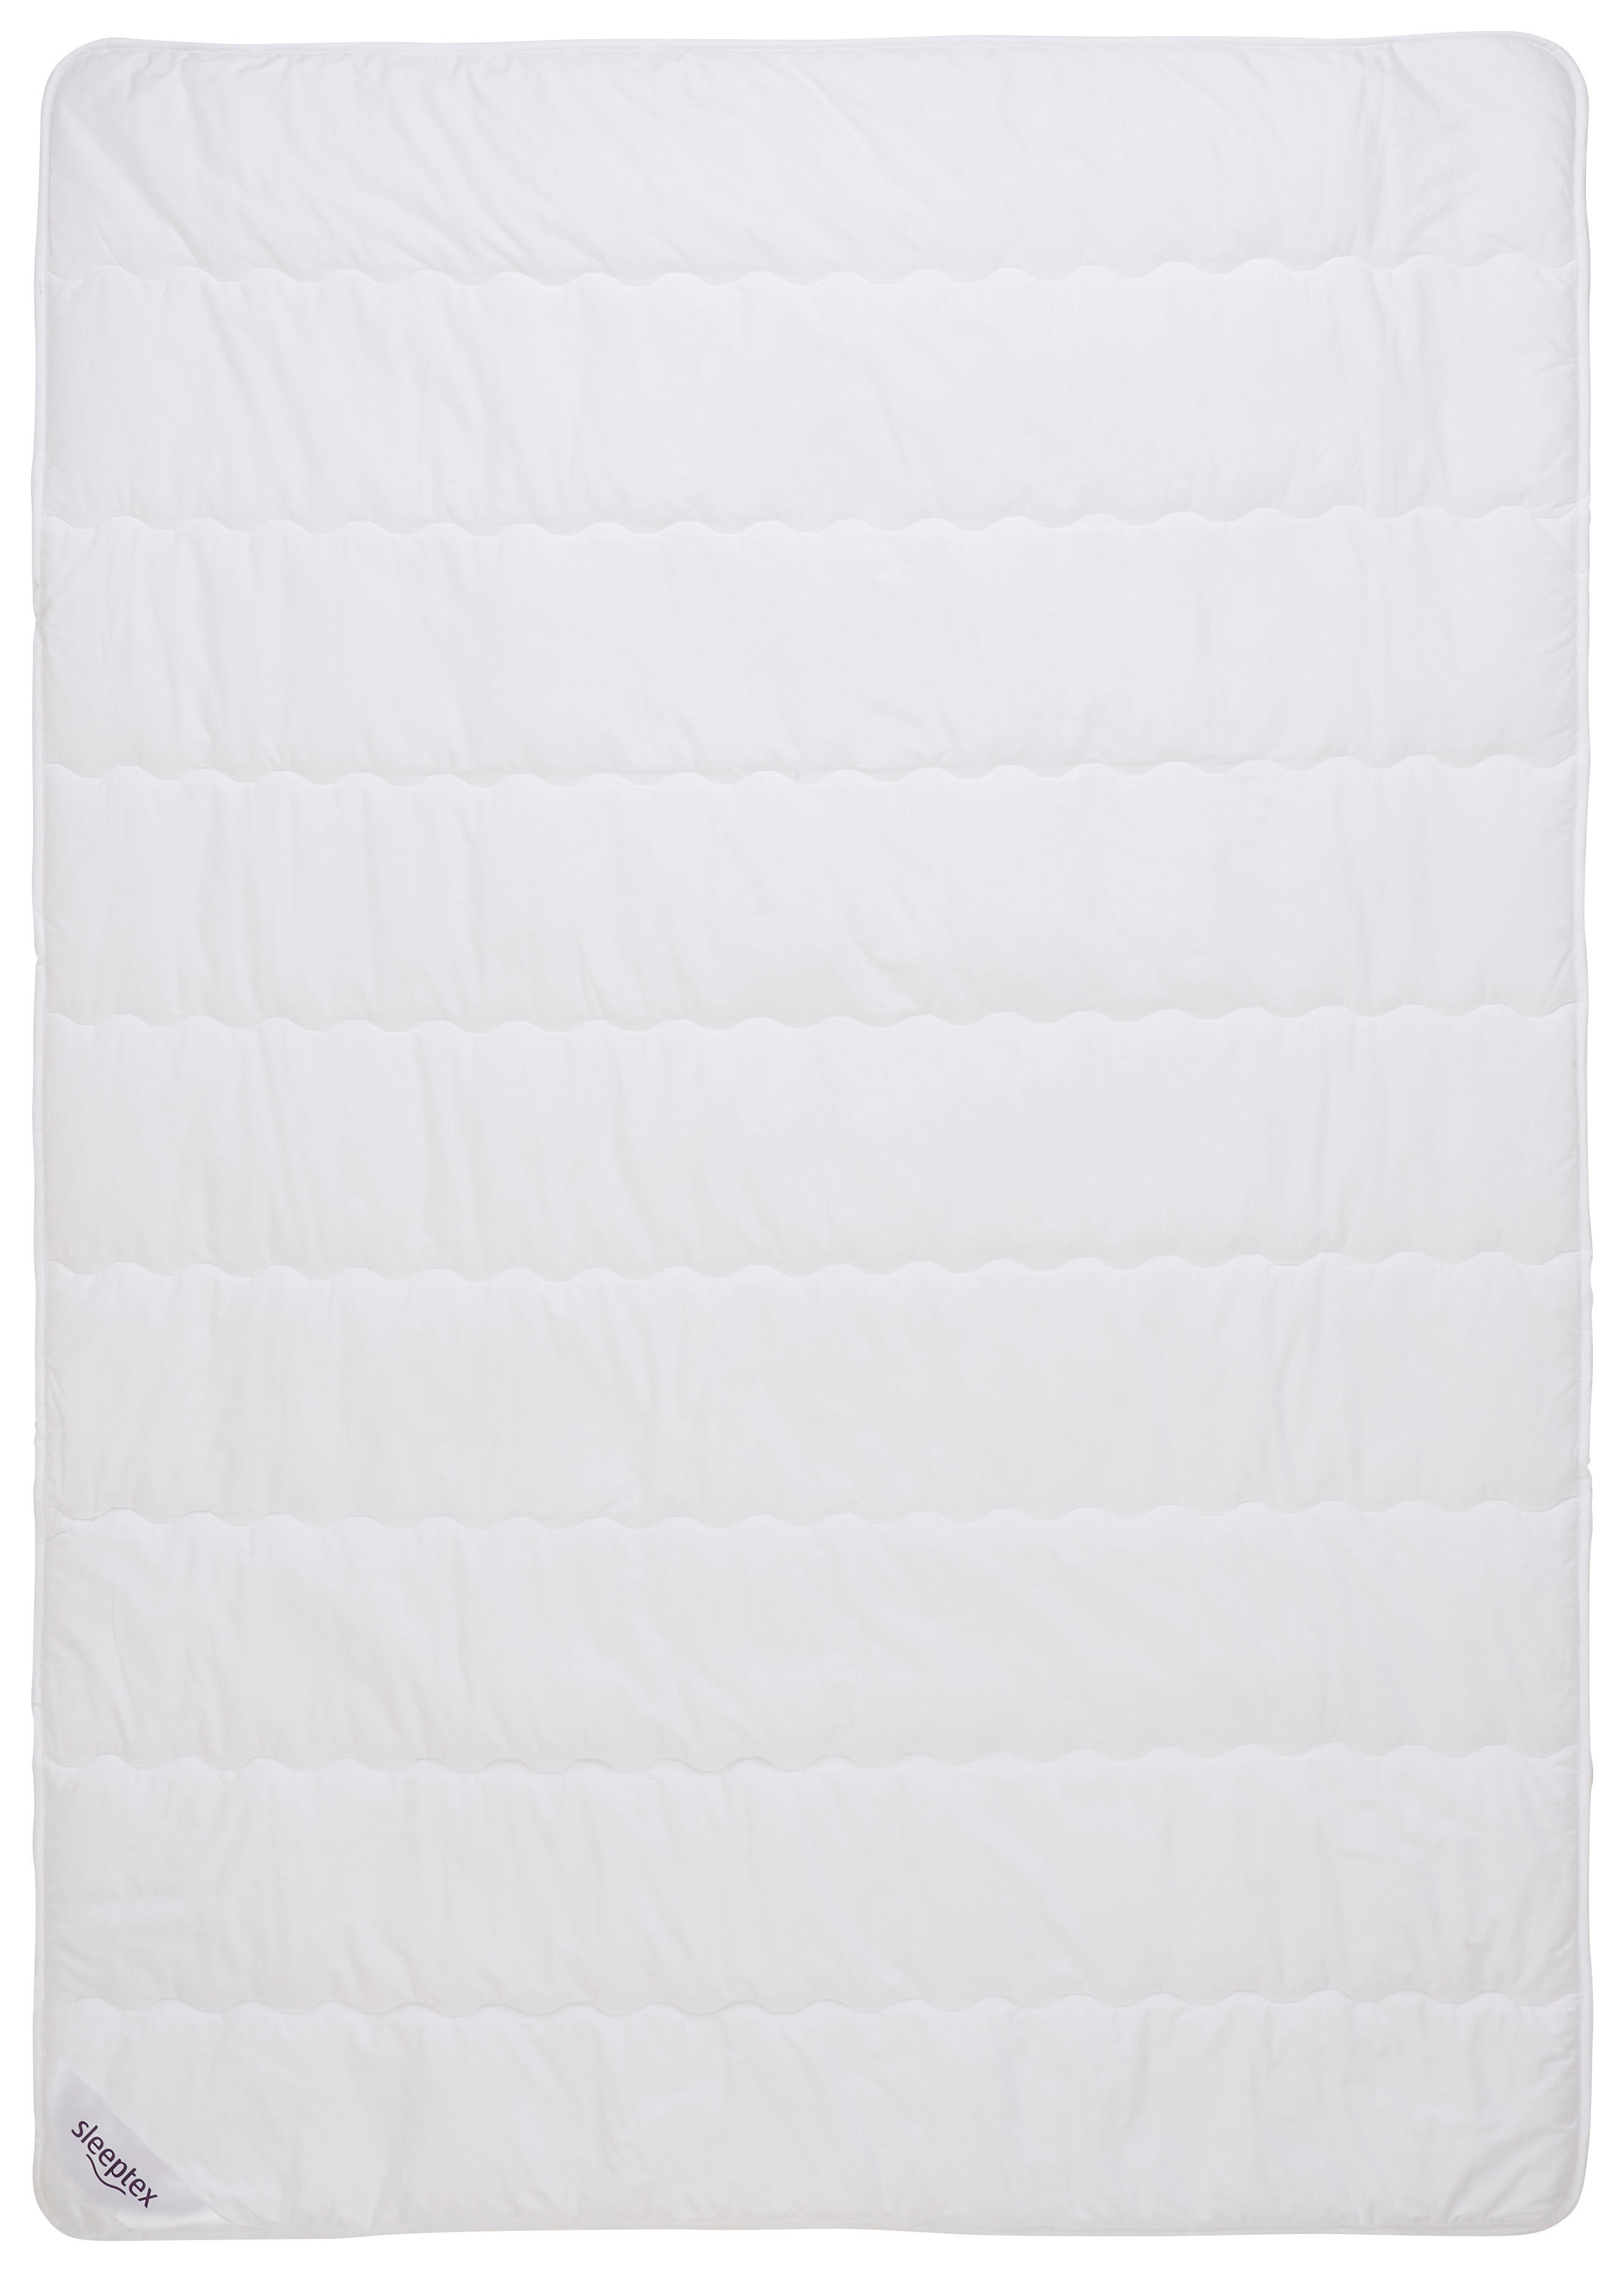 Sleeptex LETNÍ PŘIKRÝVKA, 140/200 cm, polyester, rouno, duté vlákno - bílá - polyester, rouno, duté 